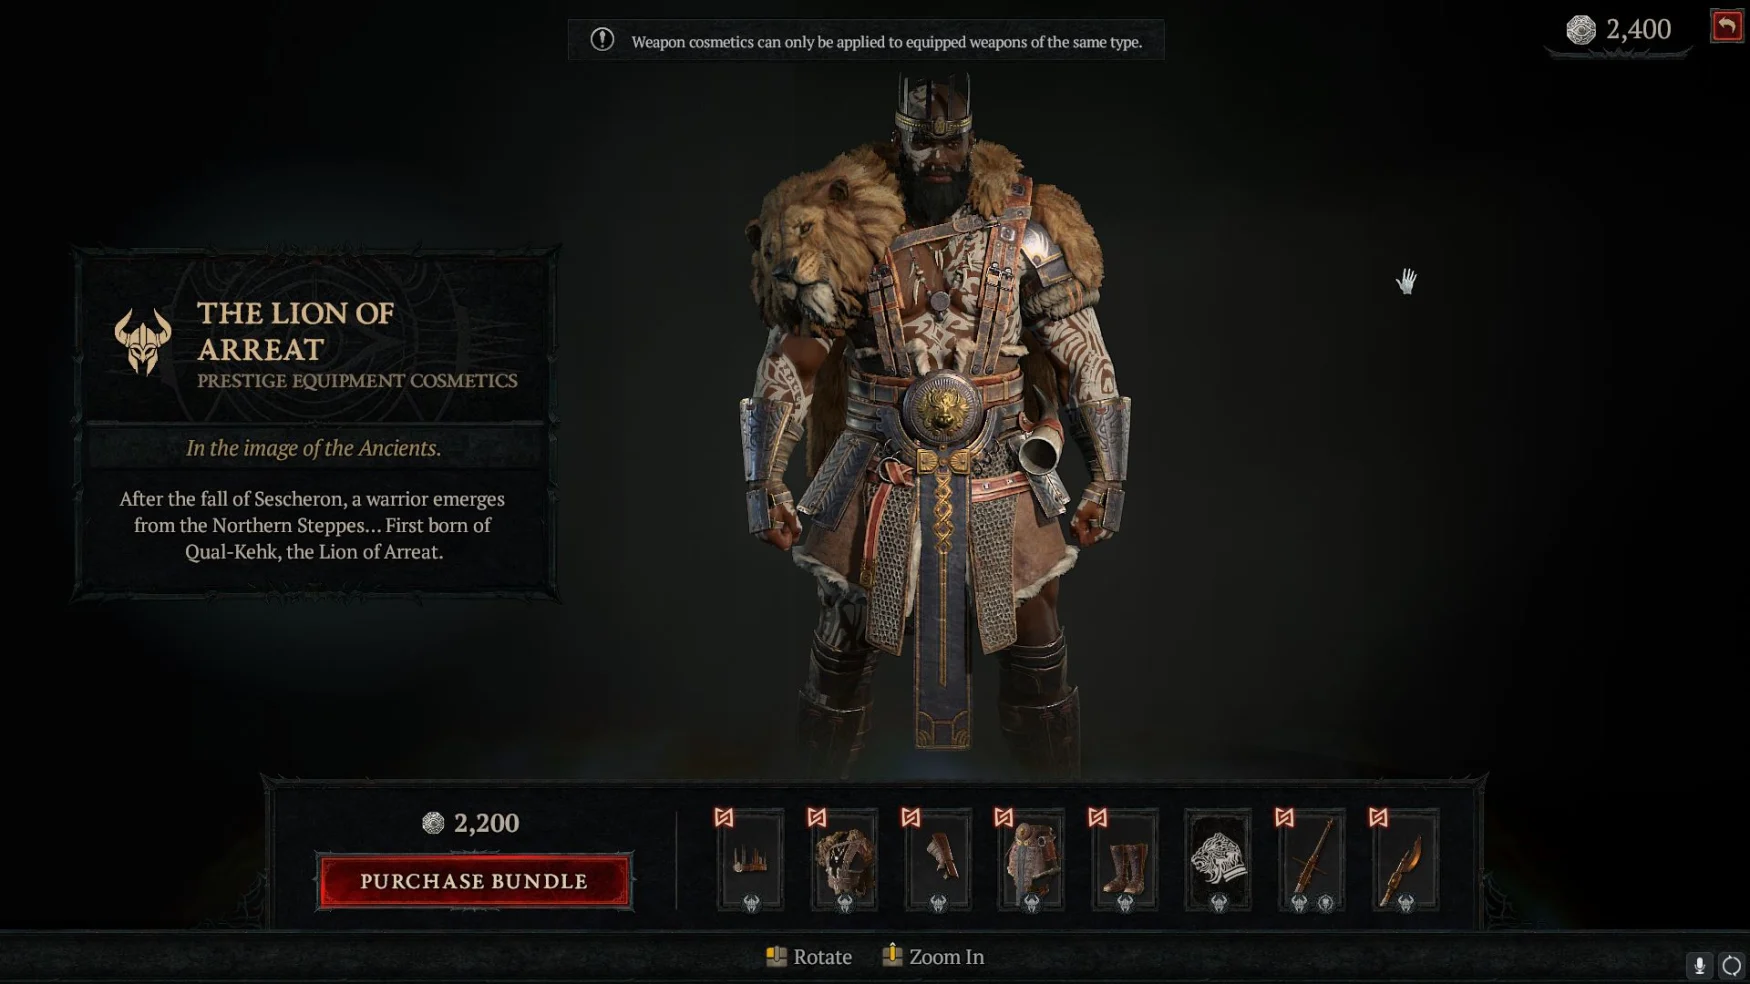 Capture d'écran de la boutique Diablo IV, montrant l'ensemble cosmétique Lion d'Arreat pour les barbares.  